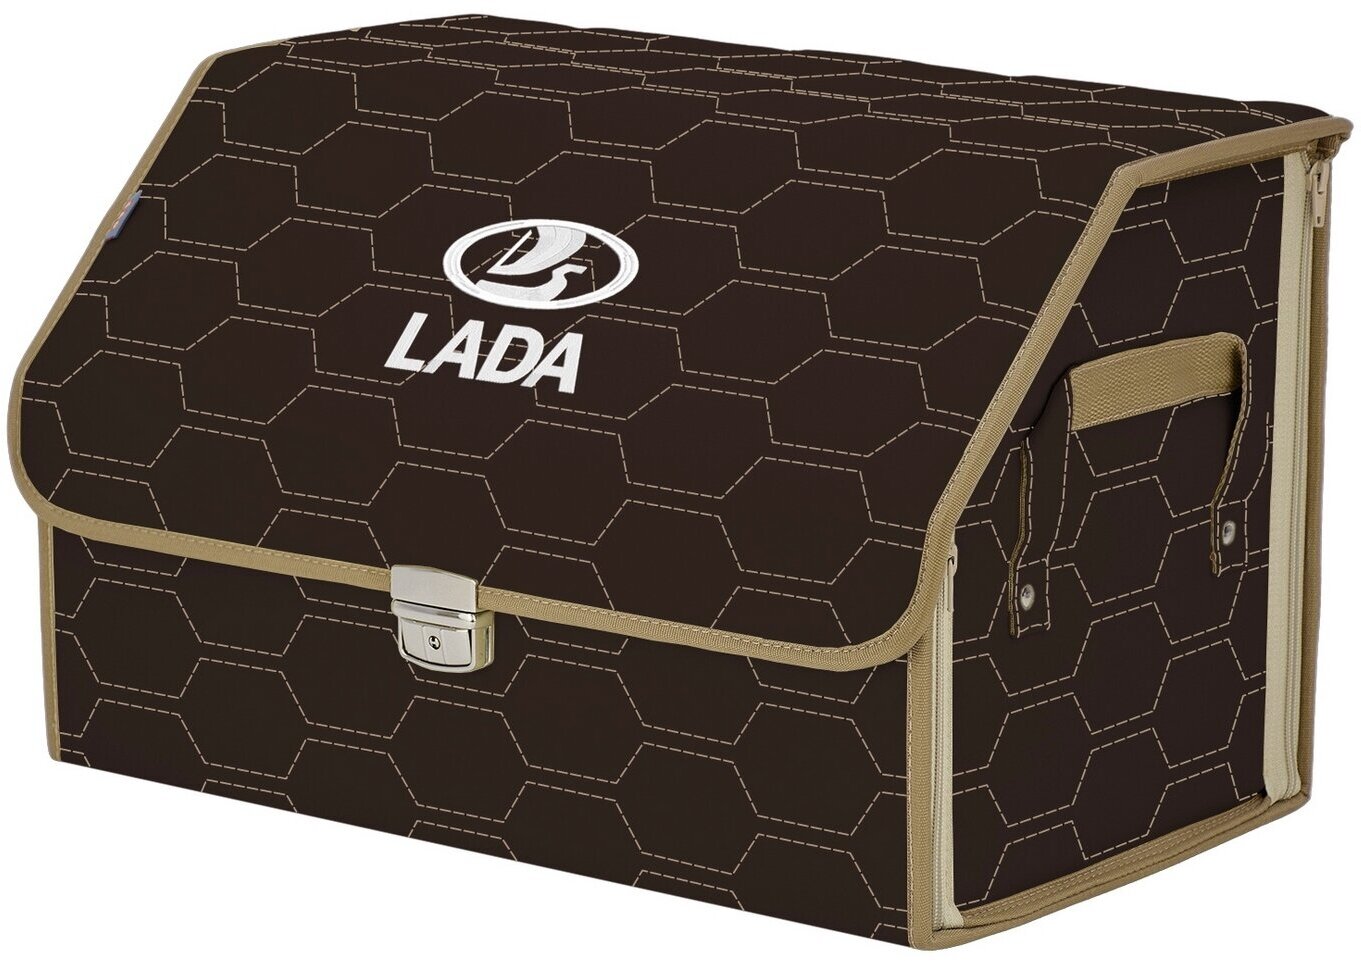 Органайзер-саквояж в багажник "Союз Премиум" (размер L). Цвет: коричневый с бежевой прострочкой Соты и вышивкой LADA (лада).